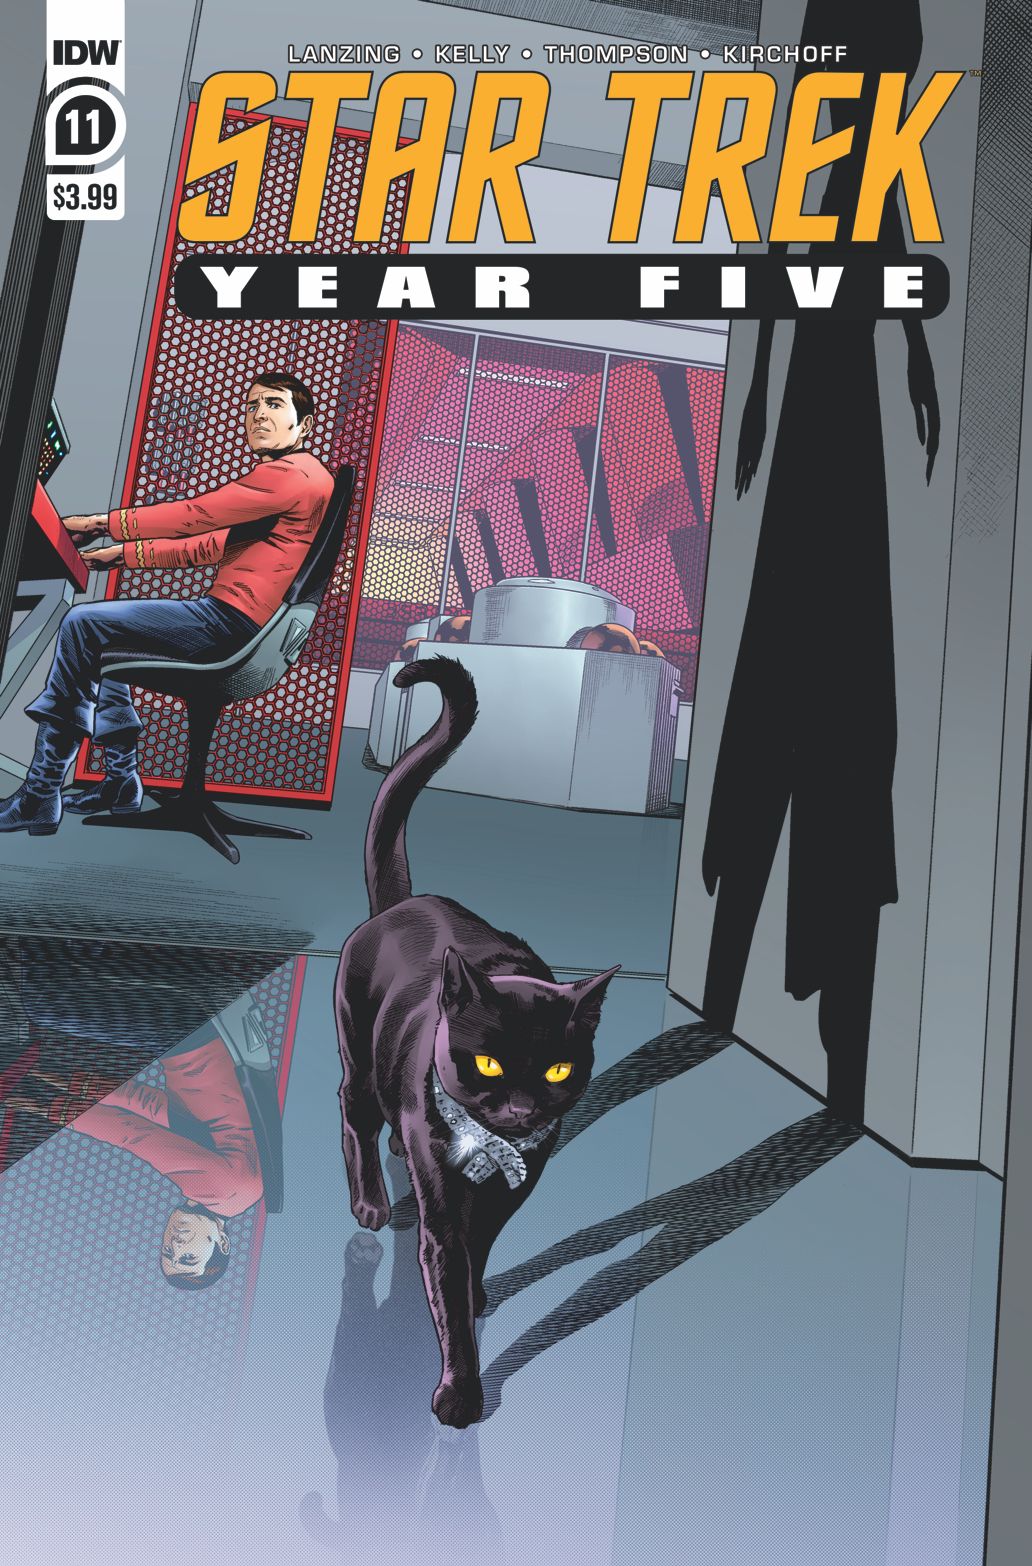 Star Trek: Year Five #11 Comic